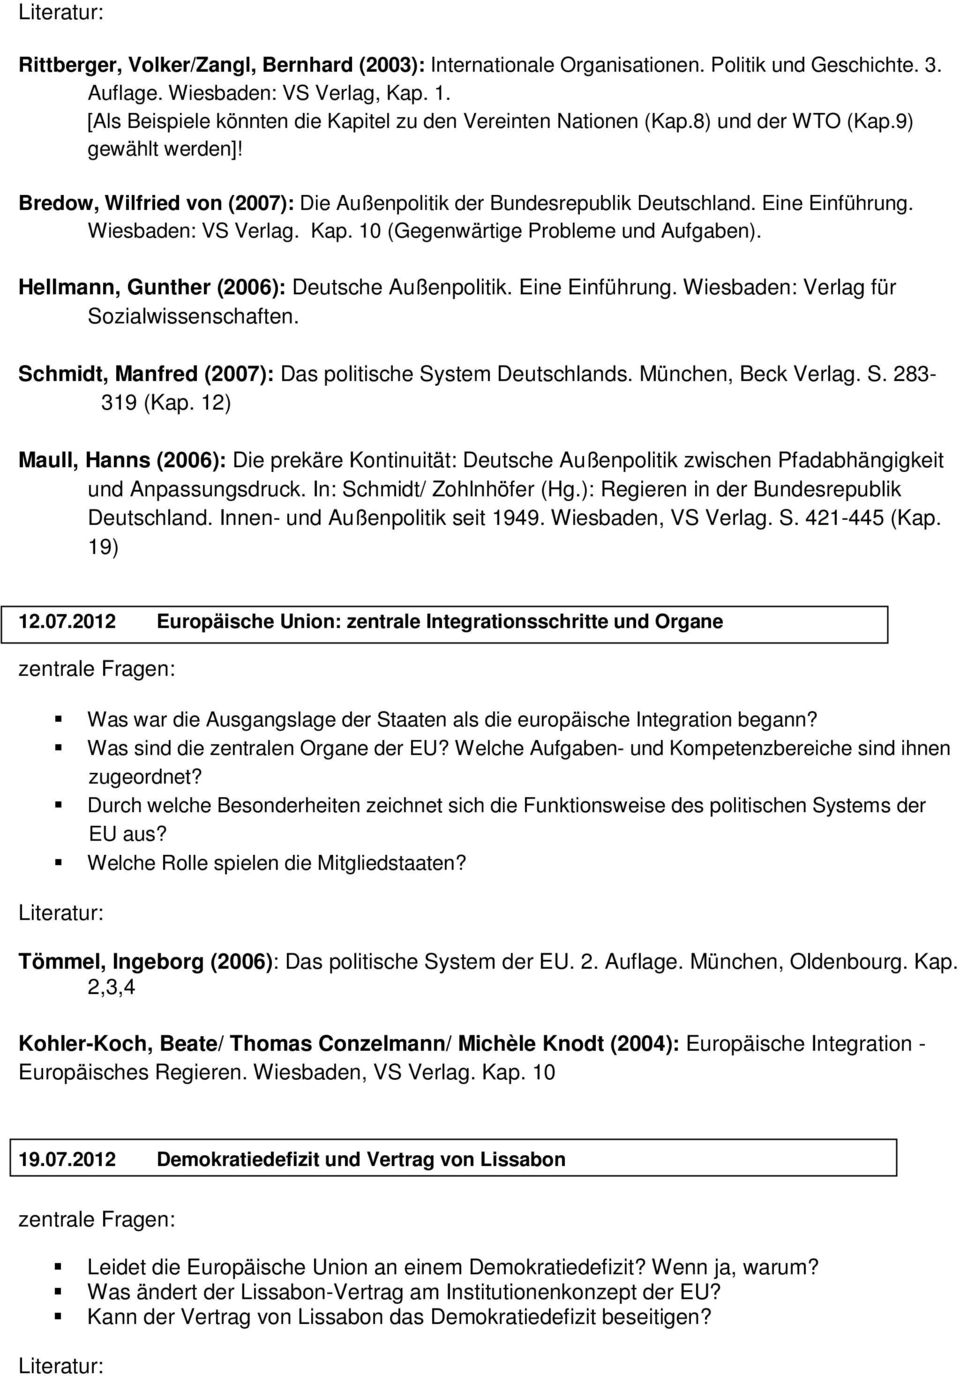 Wiesbaden: VS Verlag. Kap. 10 (Gegenwärtige Probleme und Aufgaben). Hellmann, Gunther (2006): Deutsche Außenpolitik. Eine Einführung. Wiesbaden: Verlag für Sozialwissenschaften.